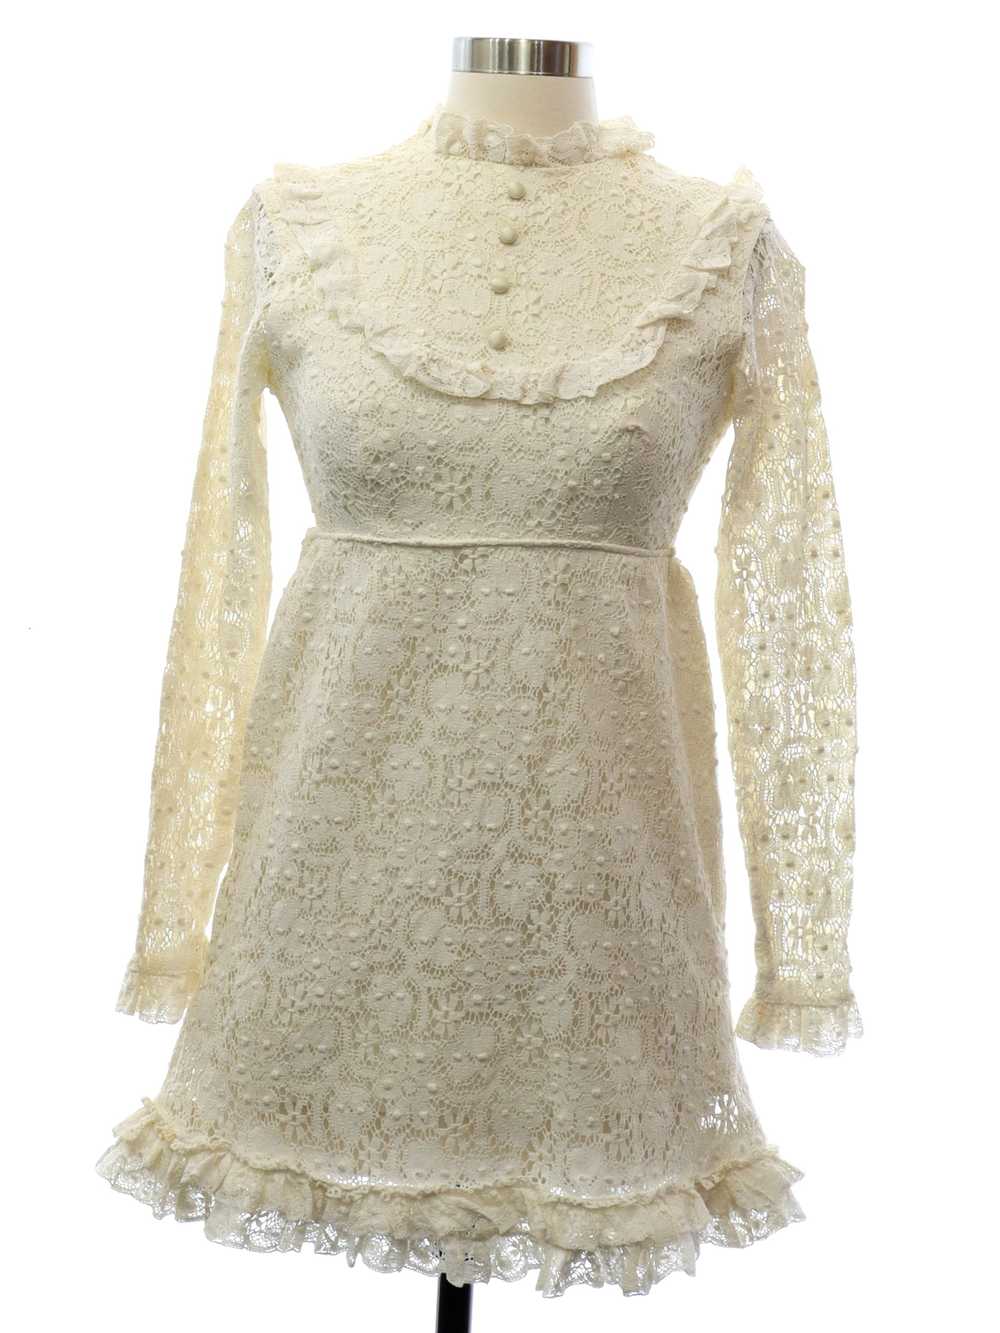 1960's or Girls Edwardian Style Lace Dress - image 1